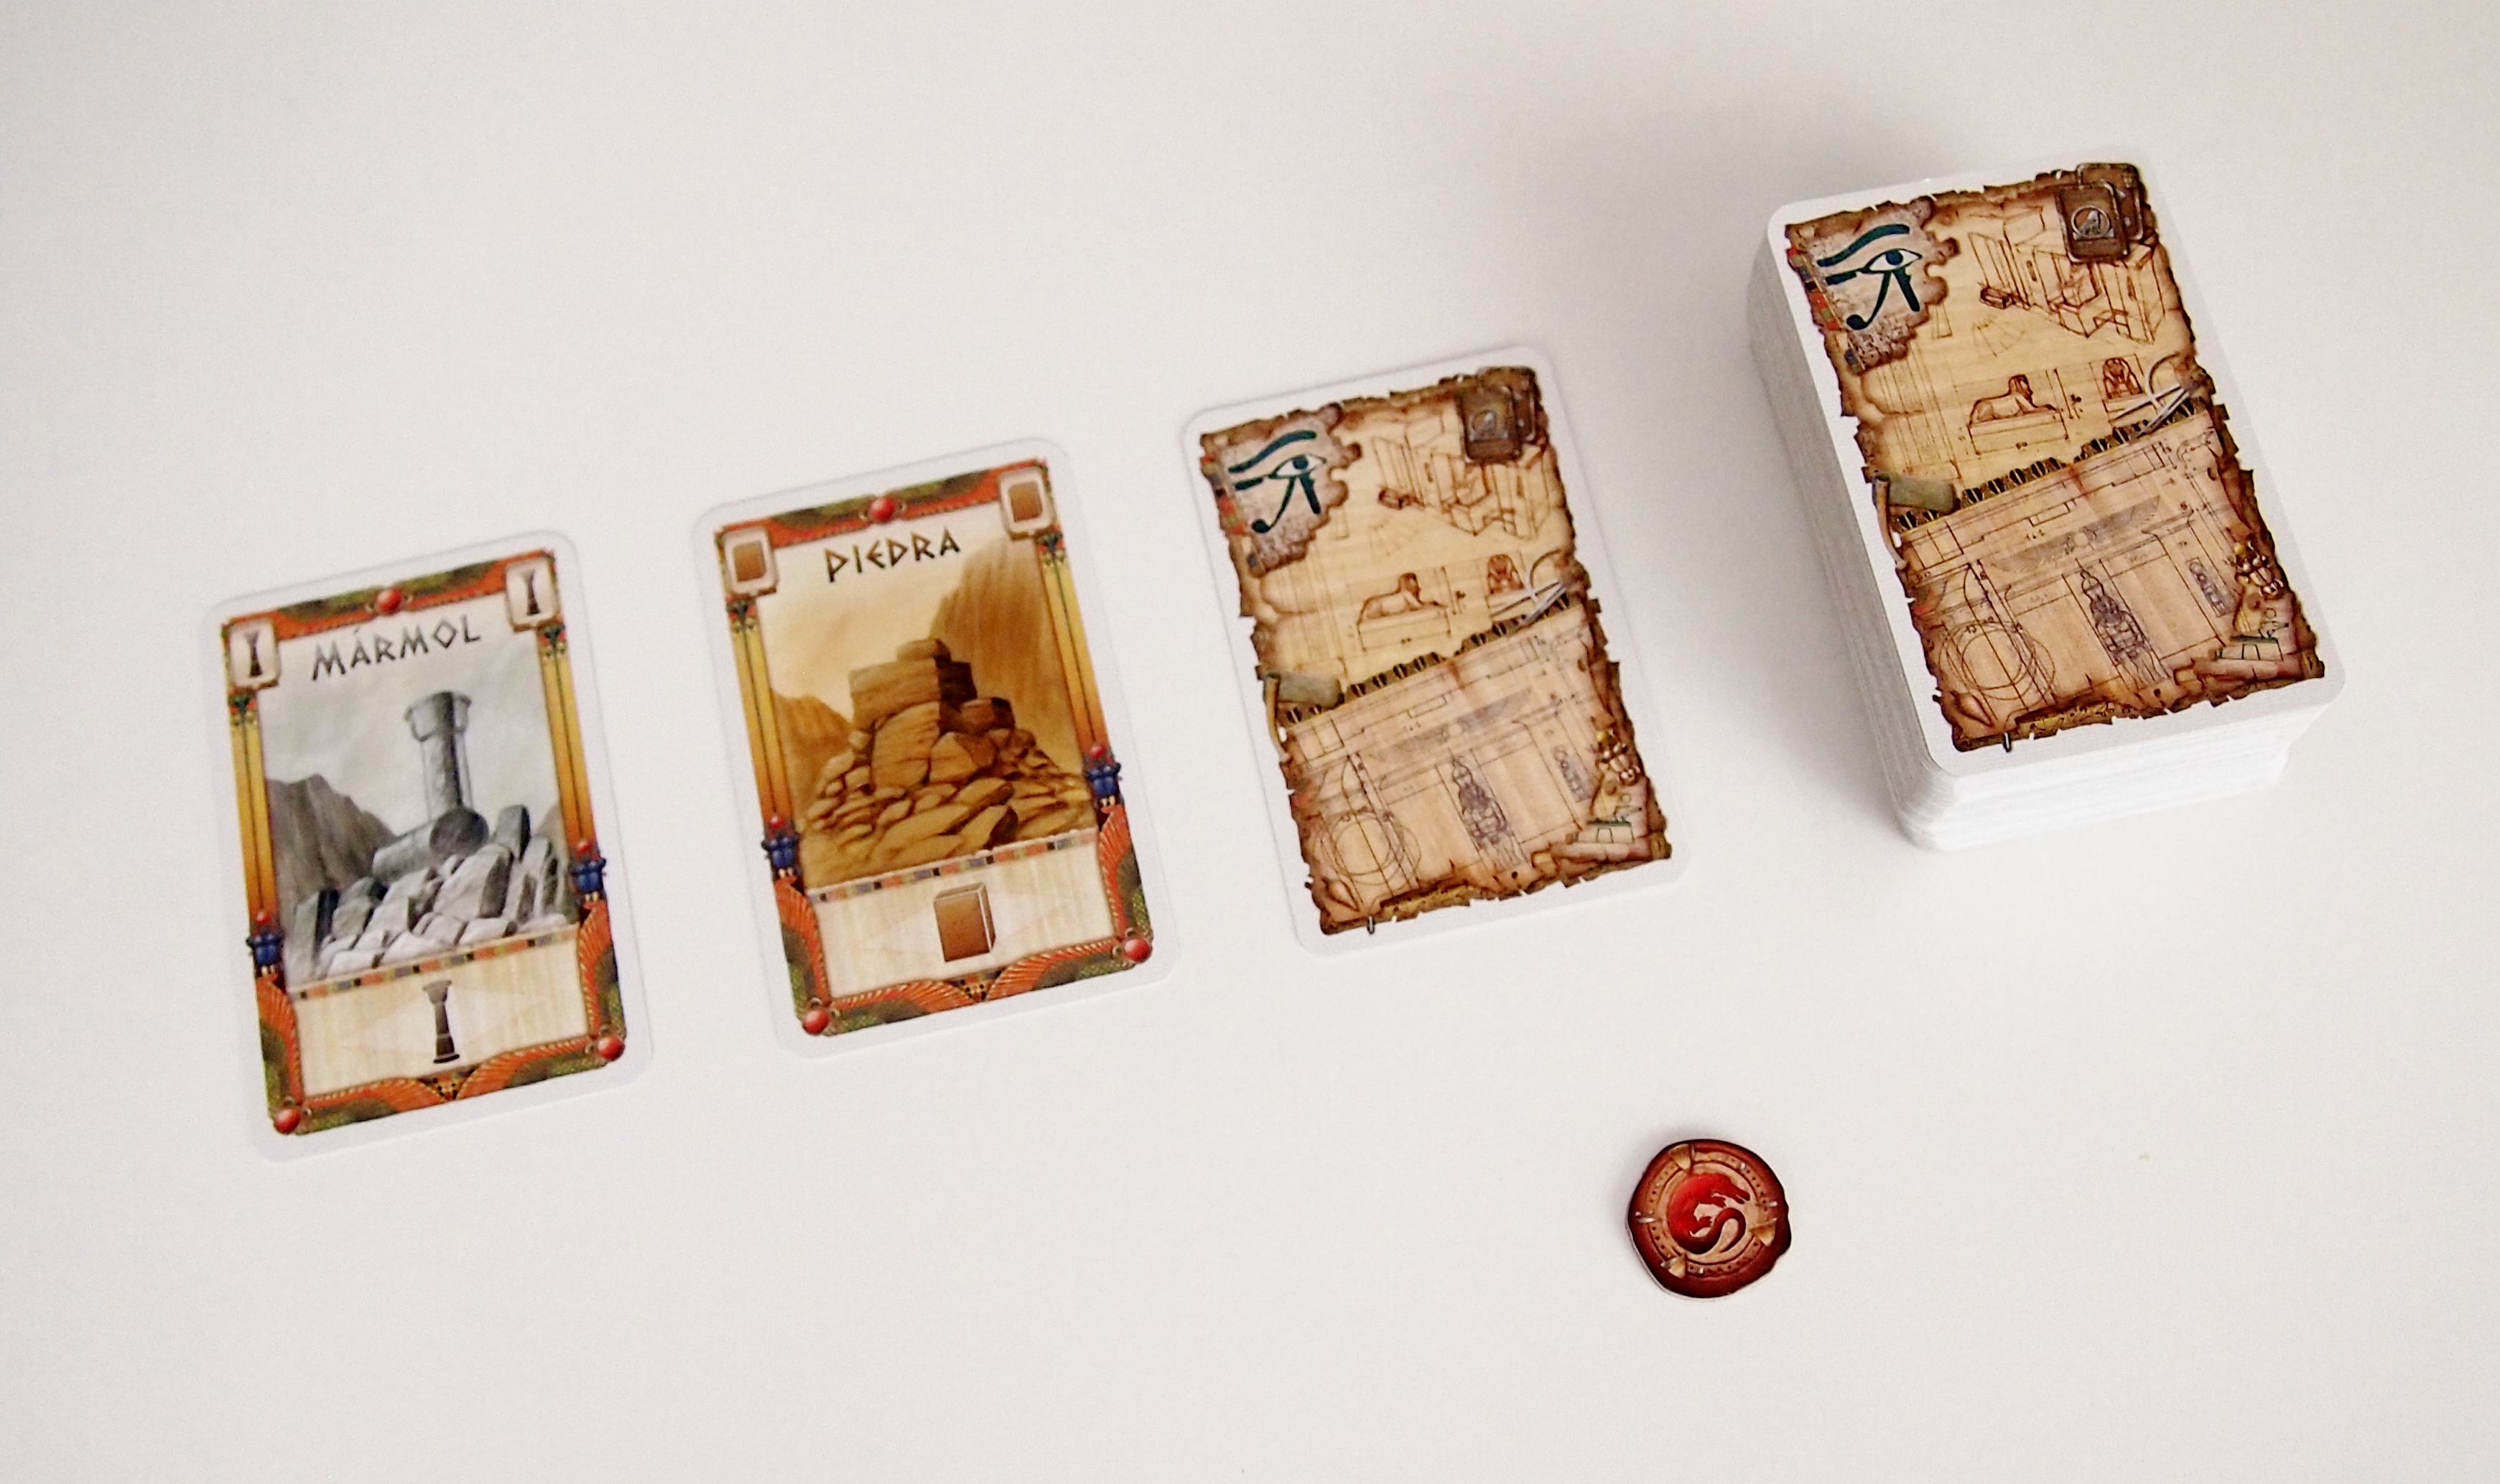 En su turno, cada jugador puede visitar el mercado en busca de recursos (un exceso de cartas se traduce en amuletos de corrupción). 